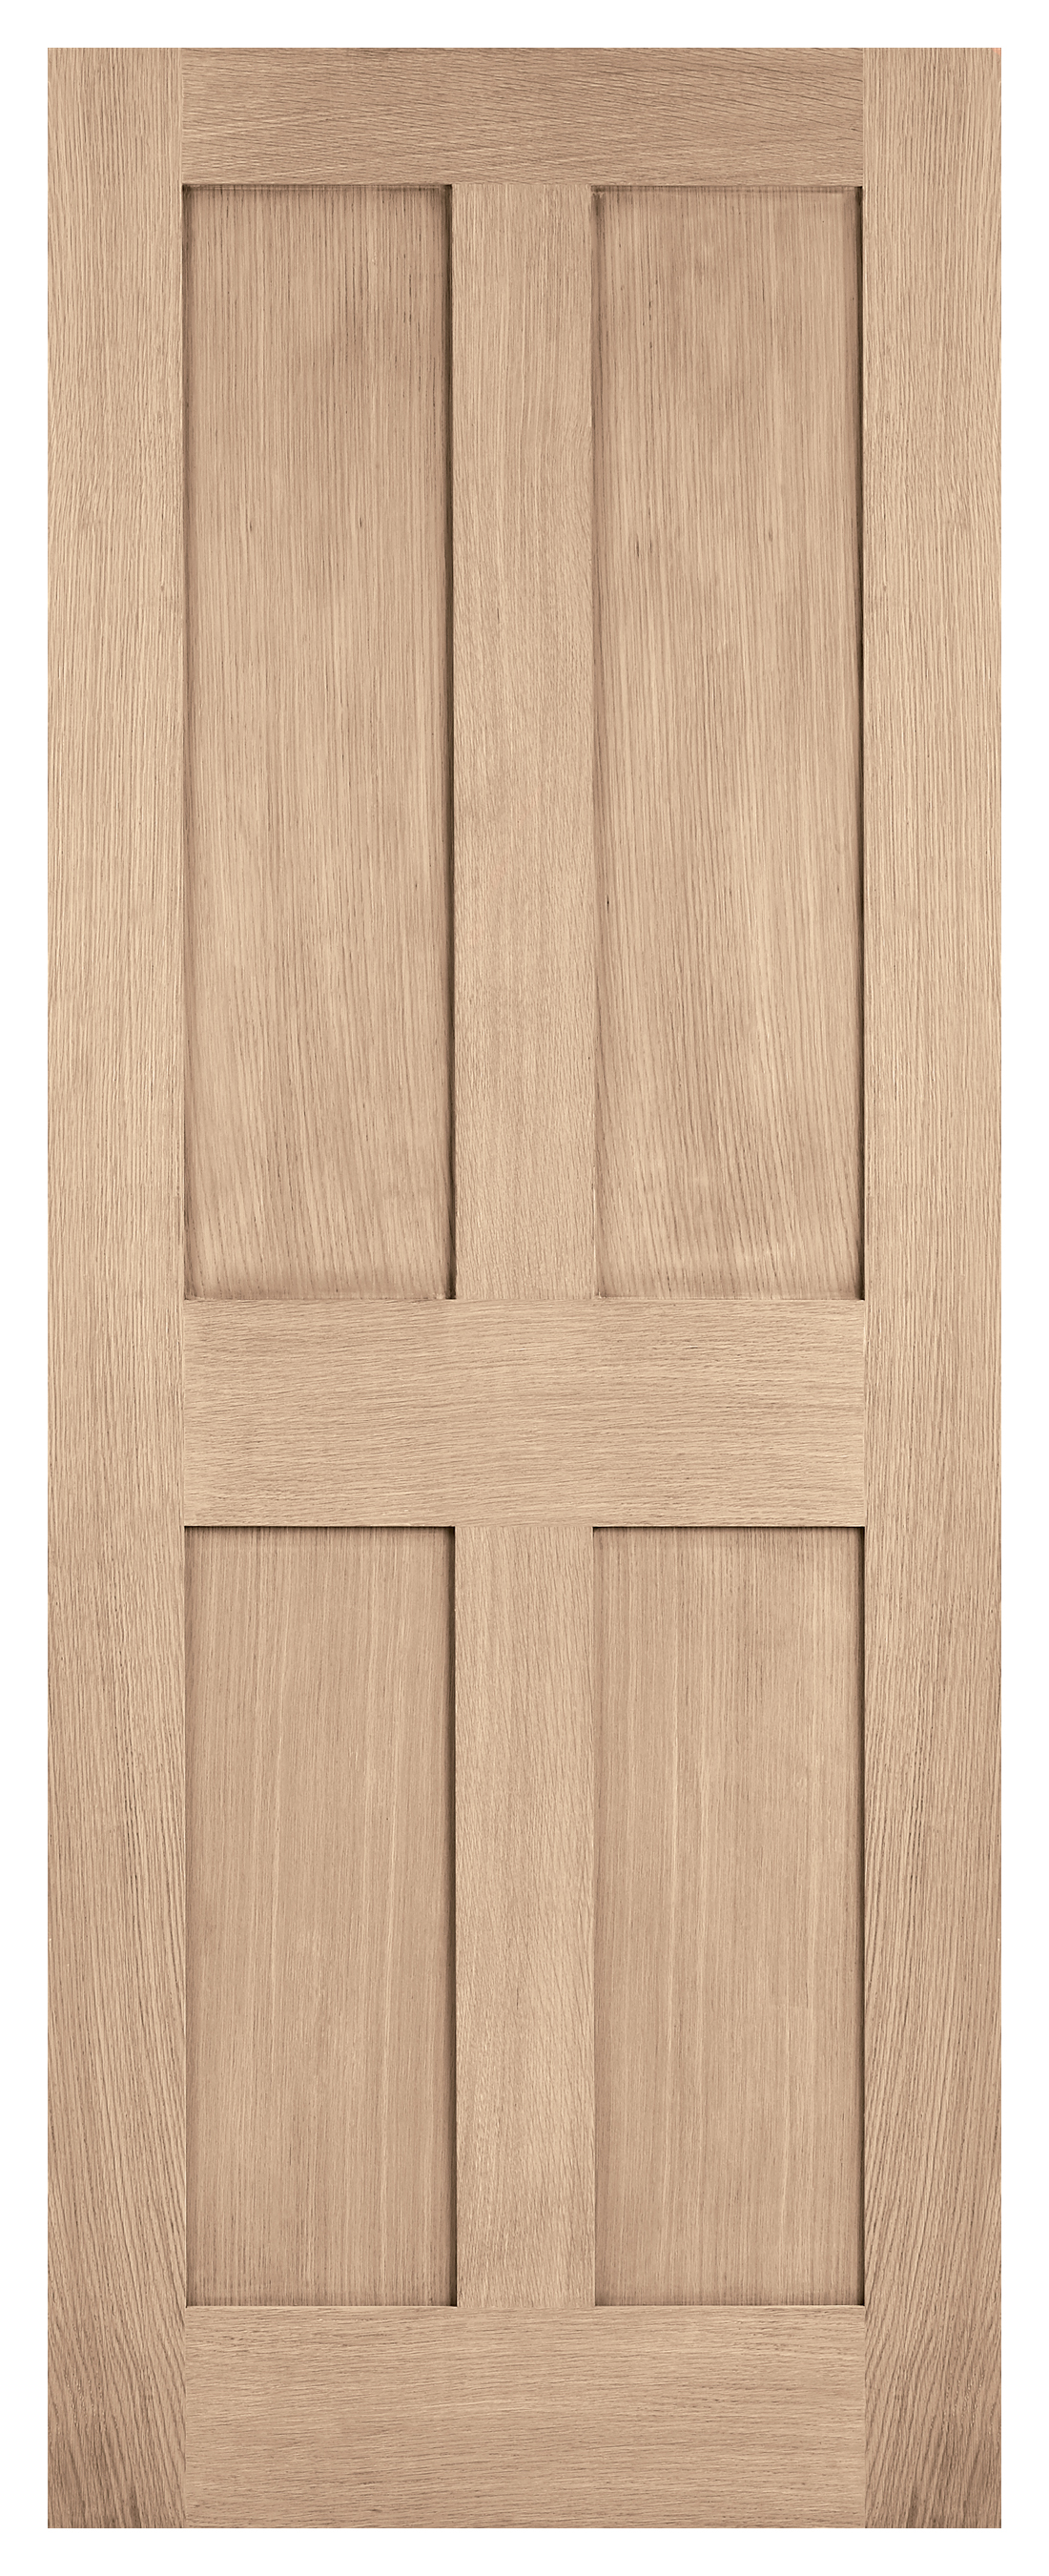 Image of LPD Internal London 4 Panel Unfinished Oak FD30 Fire Door - 686 x 1981mm